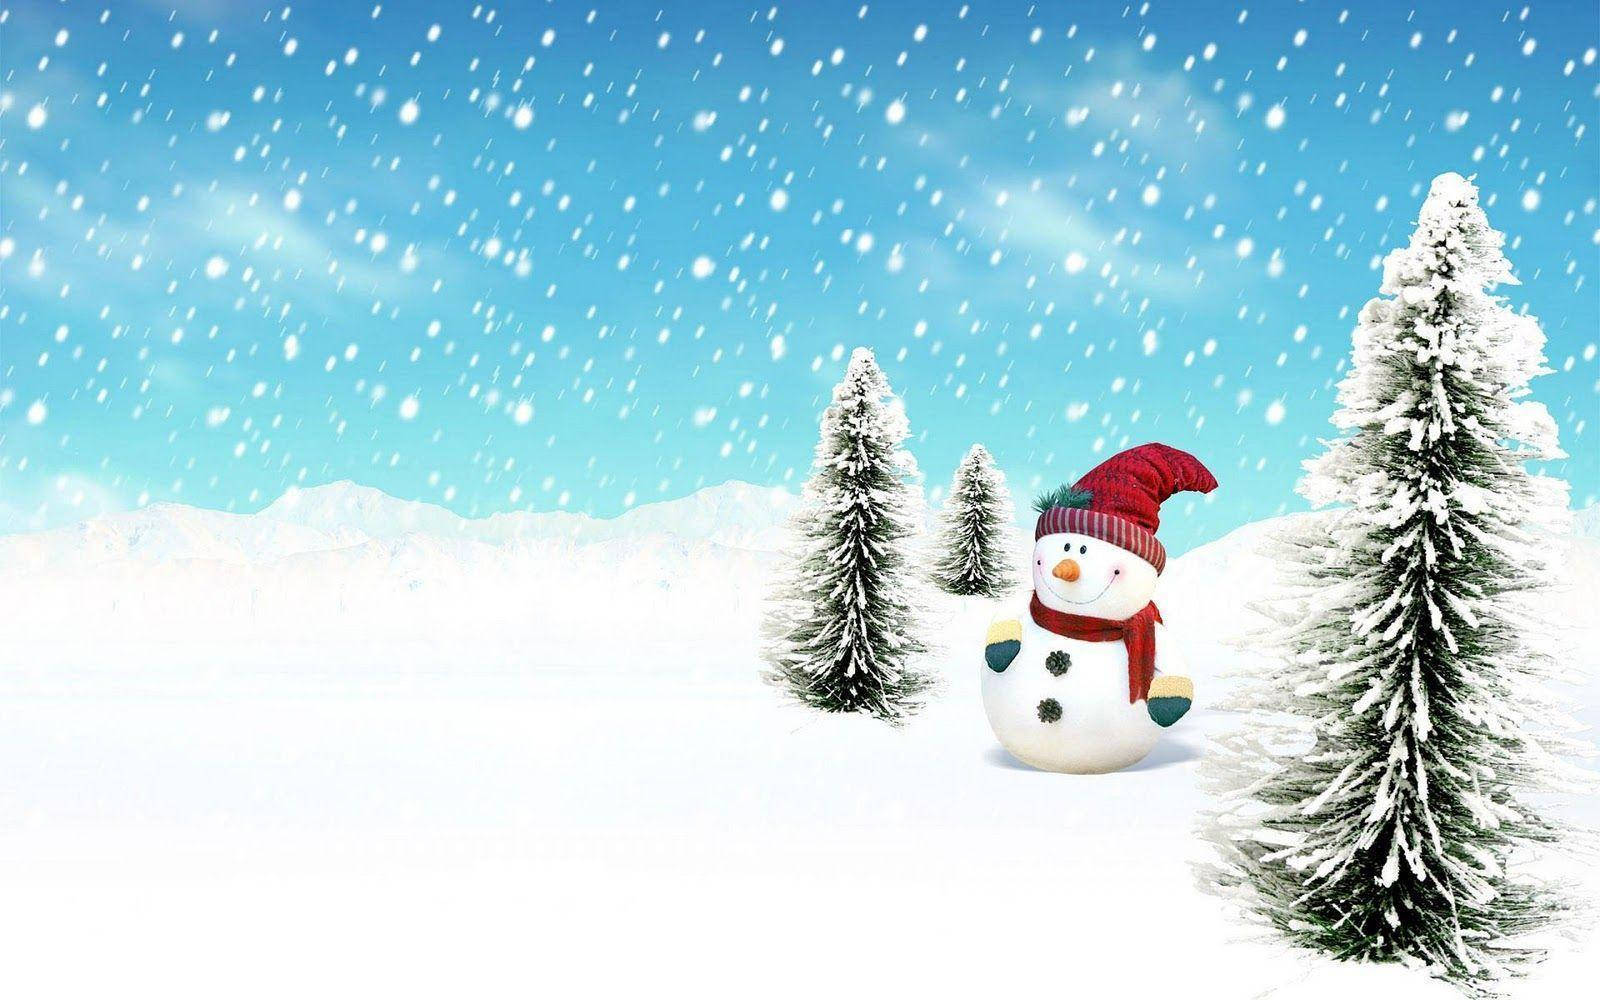 Snowman In Winter Field Background